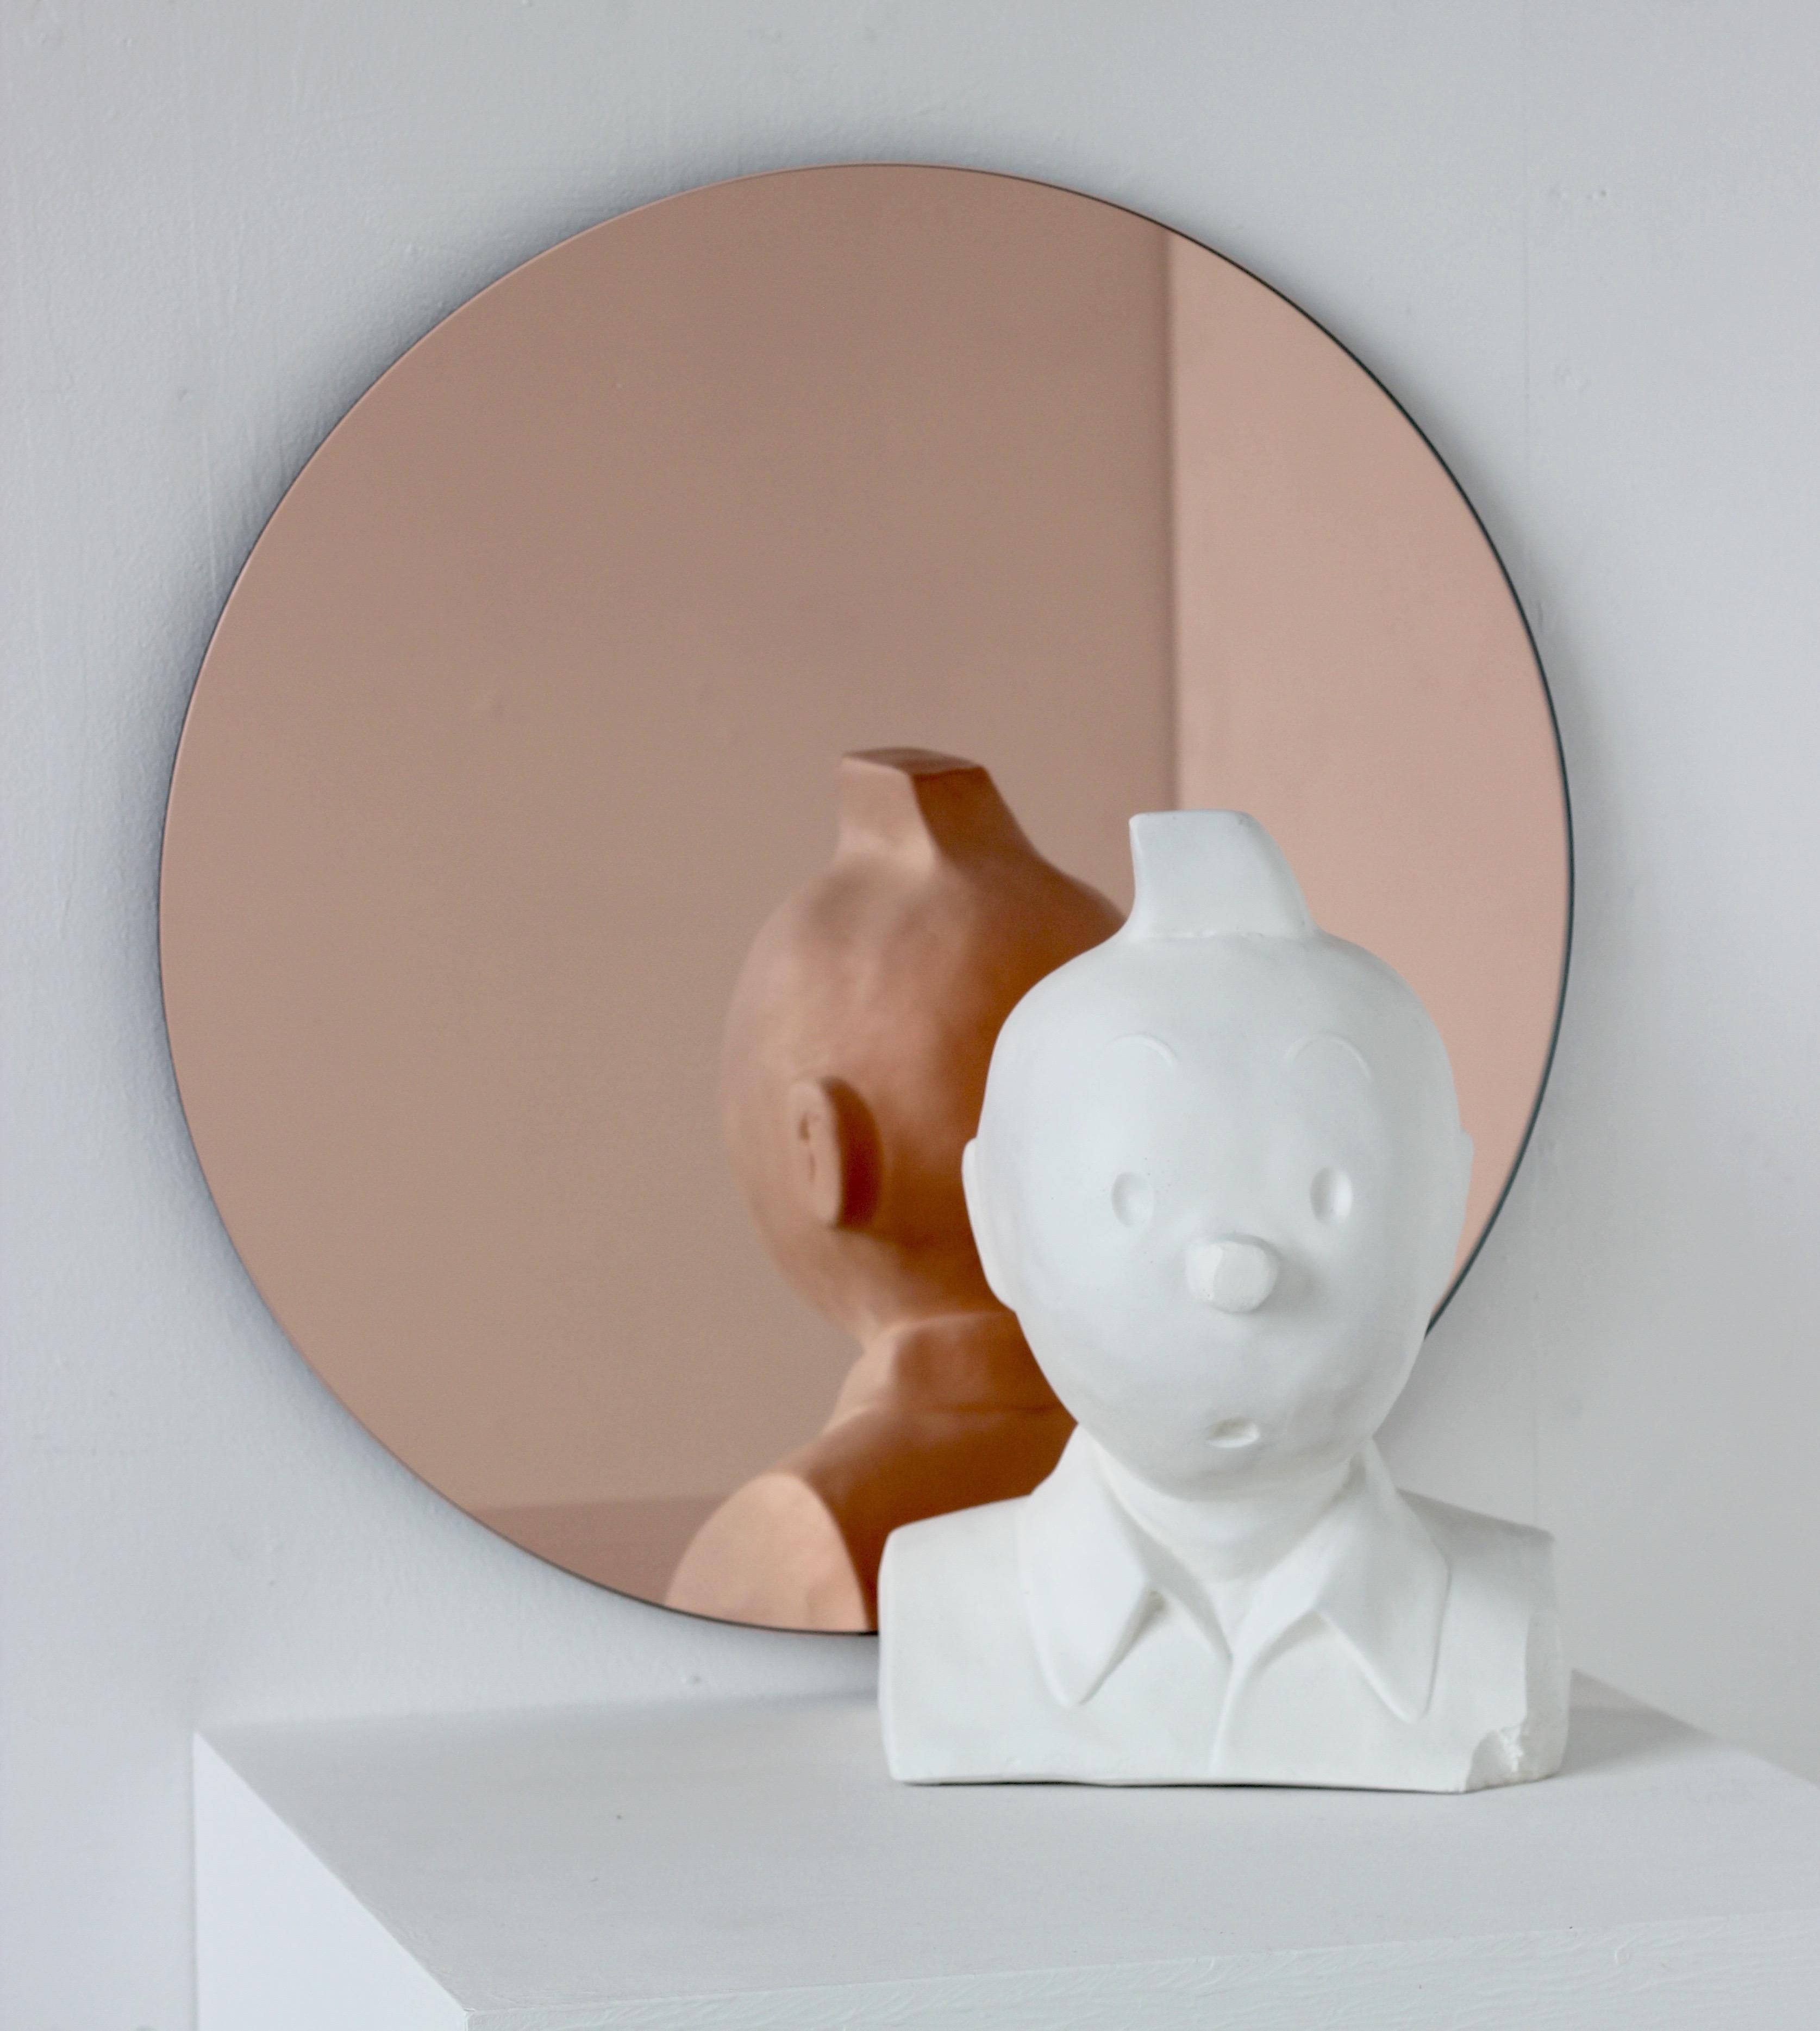 Charmant et minimaliste miroir rond Orbis™ sans cadre teinté or rose / pêche avec un effet flottant. Un design de qualité qui garantit que le miroir est parfaitement parallèle au mur. Conçu et fabriqué à Londres, au Royaume-Uni.

Equipé de plaques